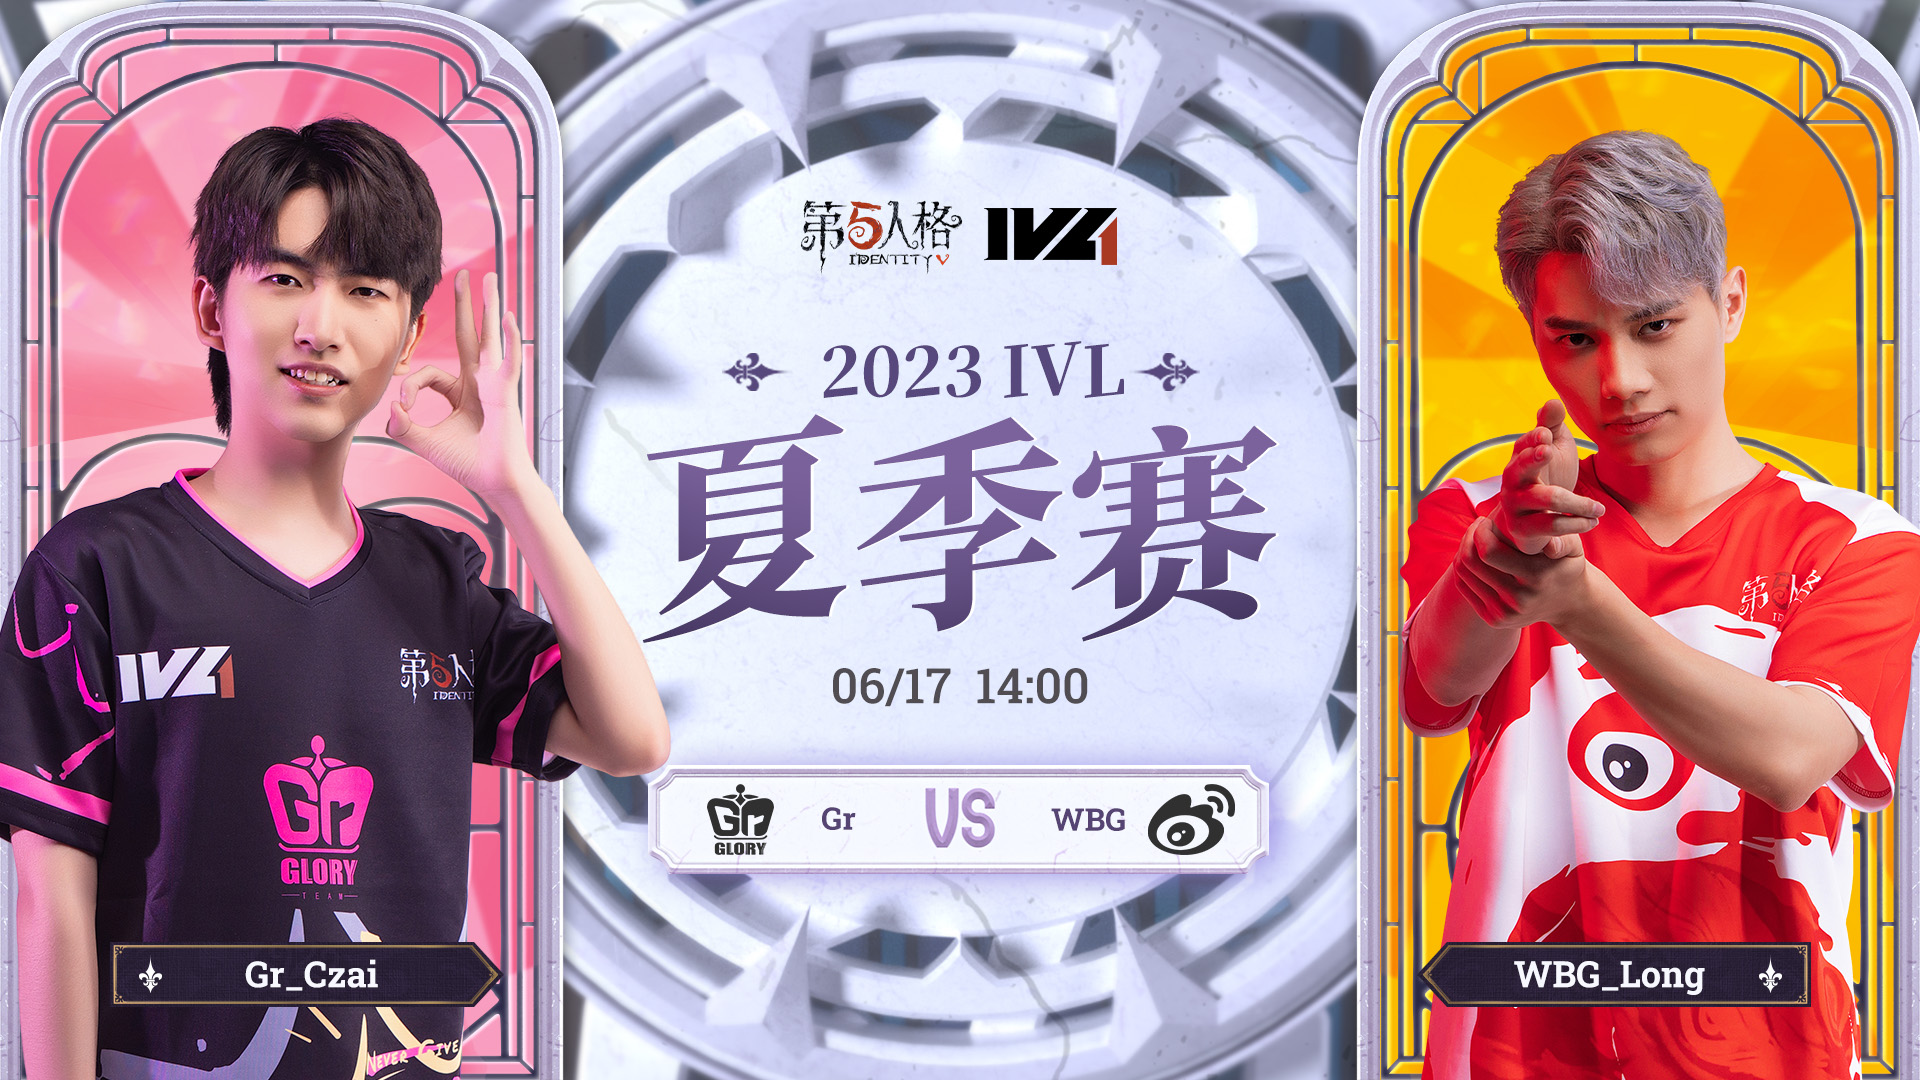 【2023IVL】夏季赛W2D2录像 Gr vs WBG